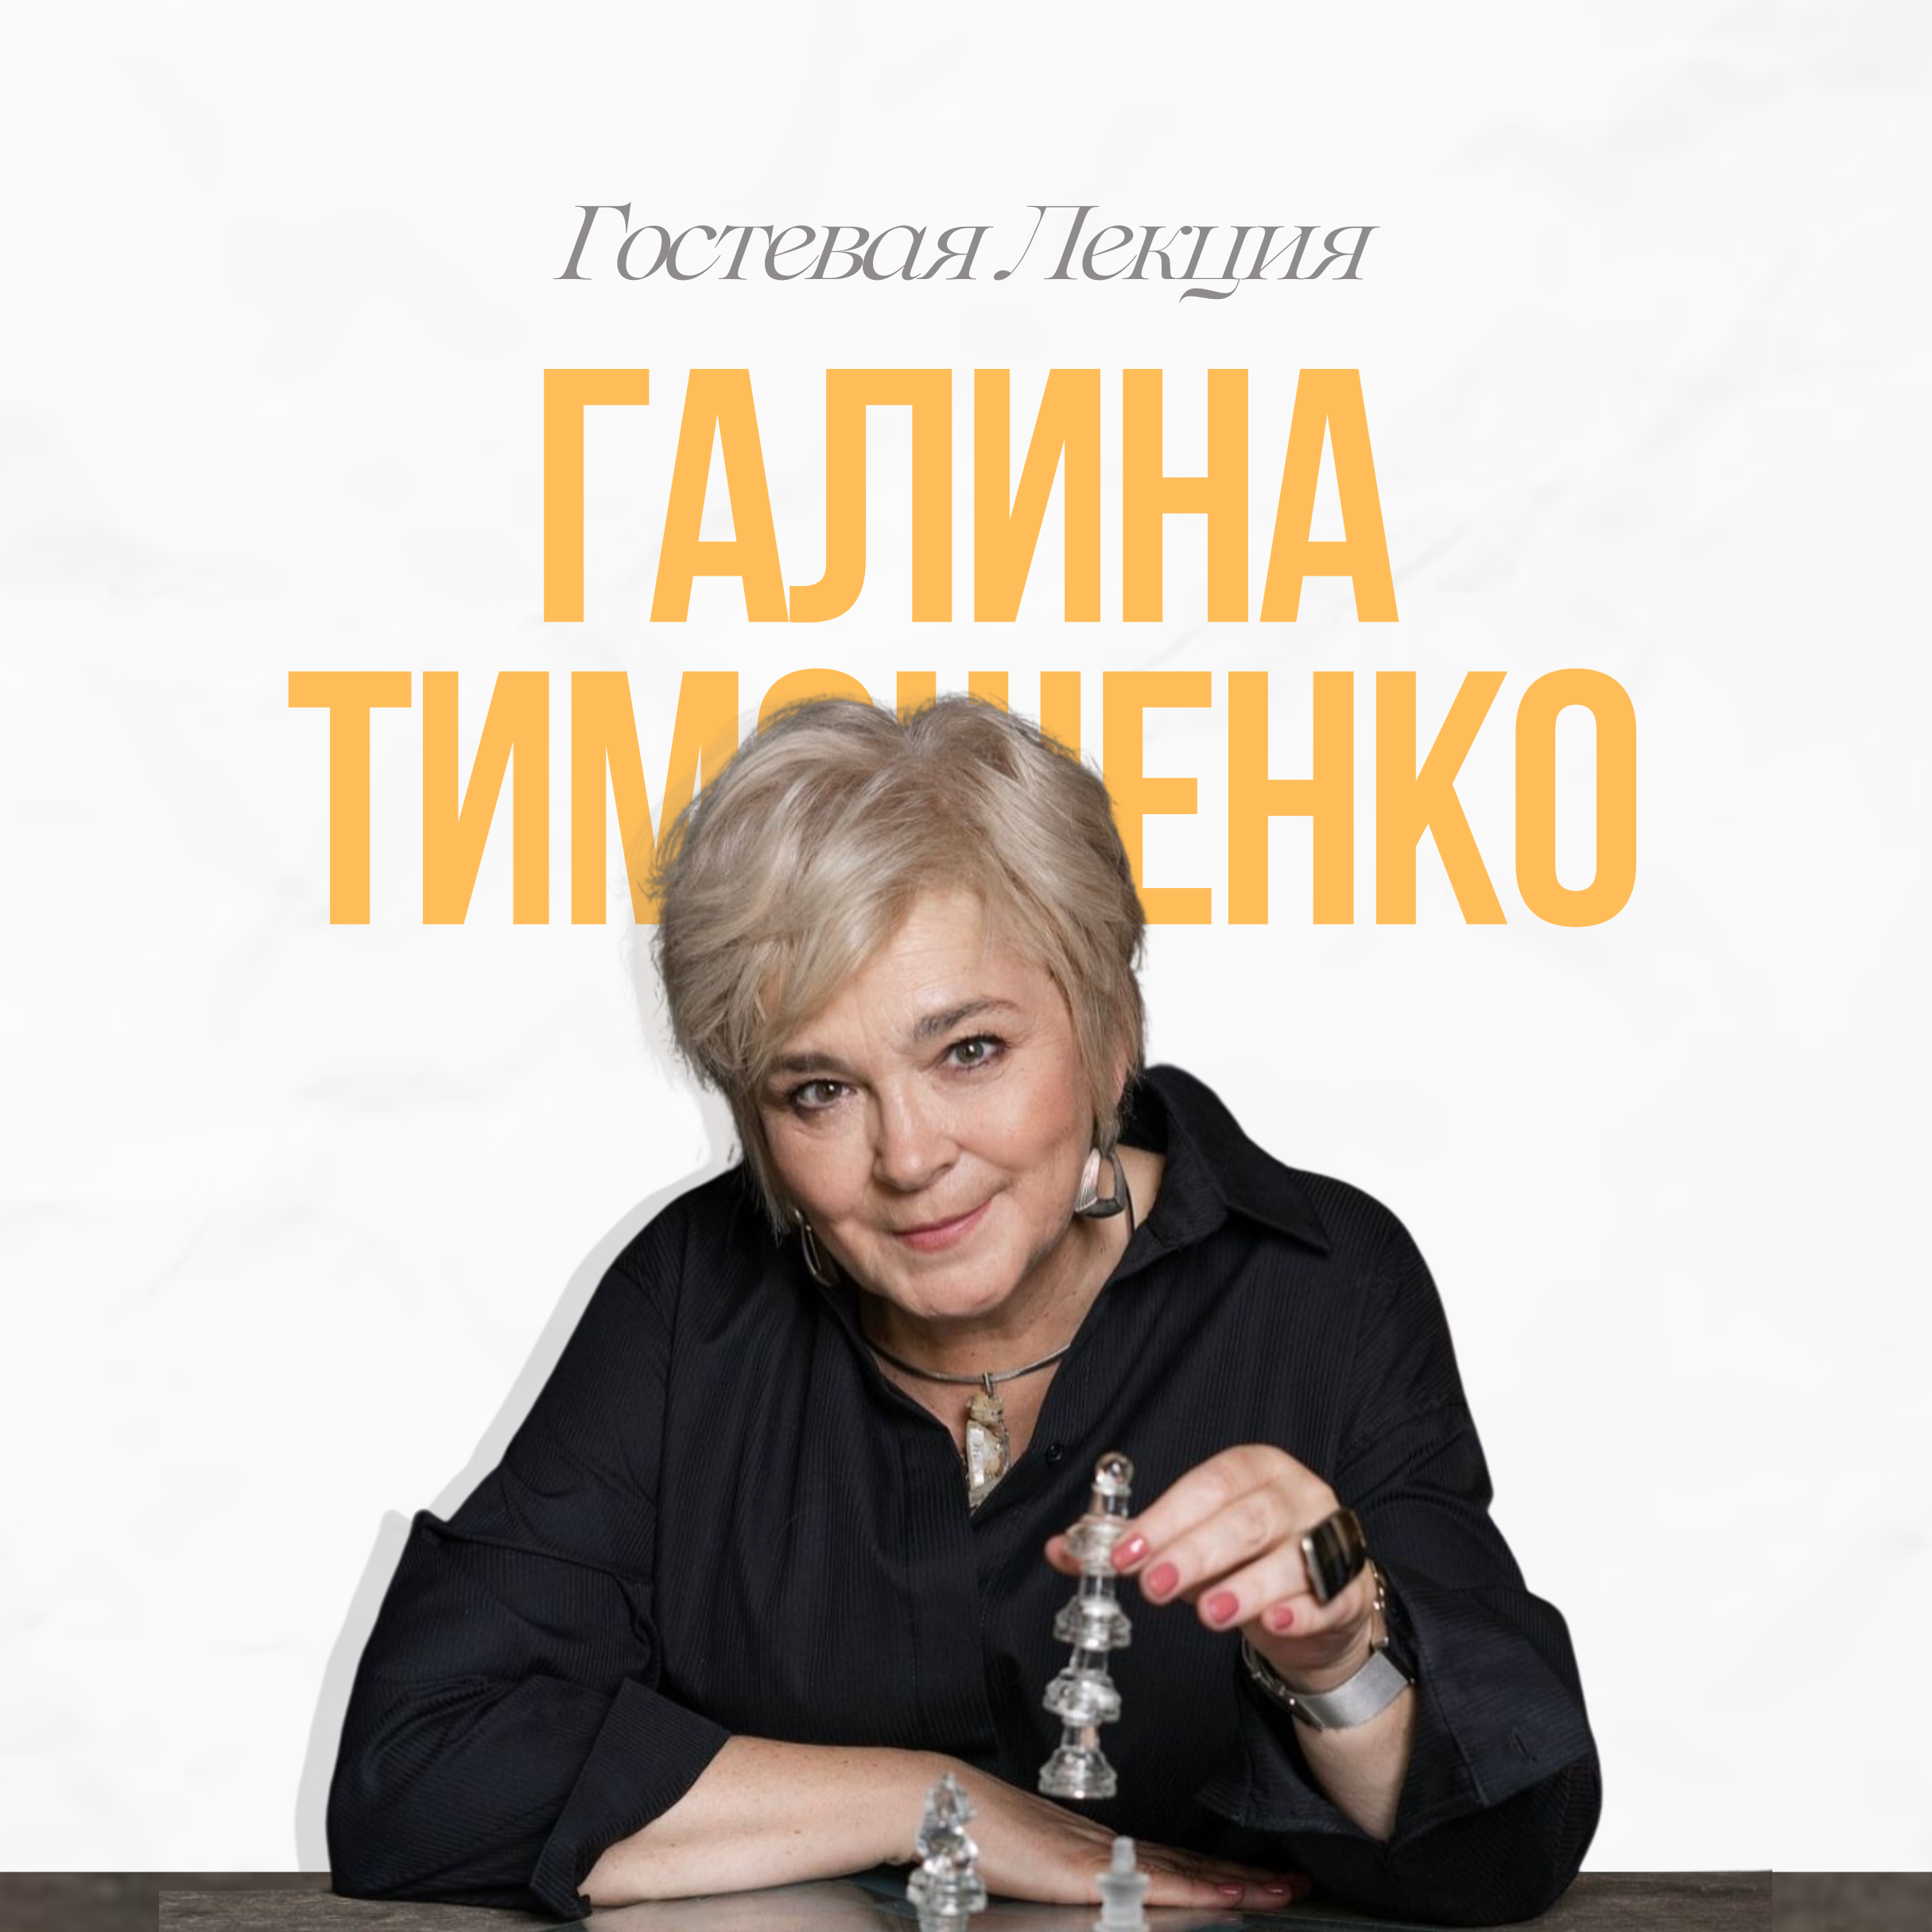 Гостевая лекция с участием Галины Тимошенко на тему "Психотерапевтические интервенции"